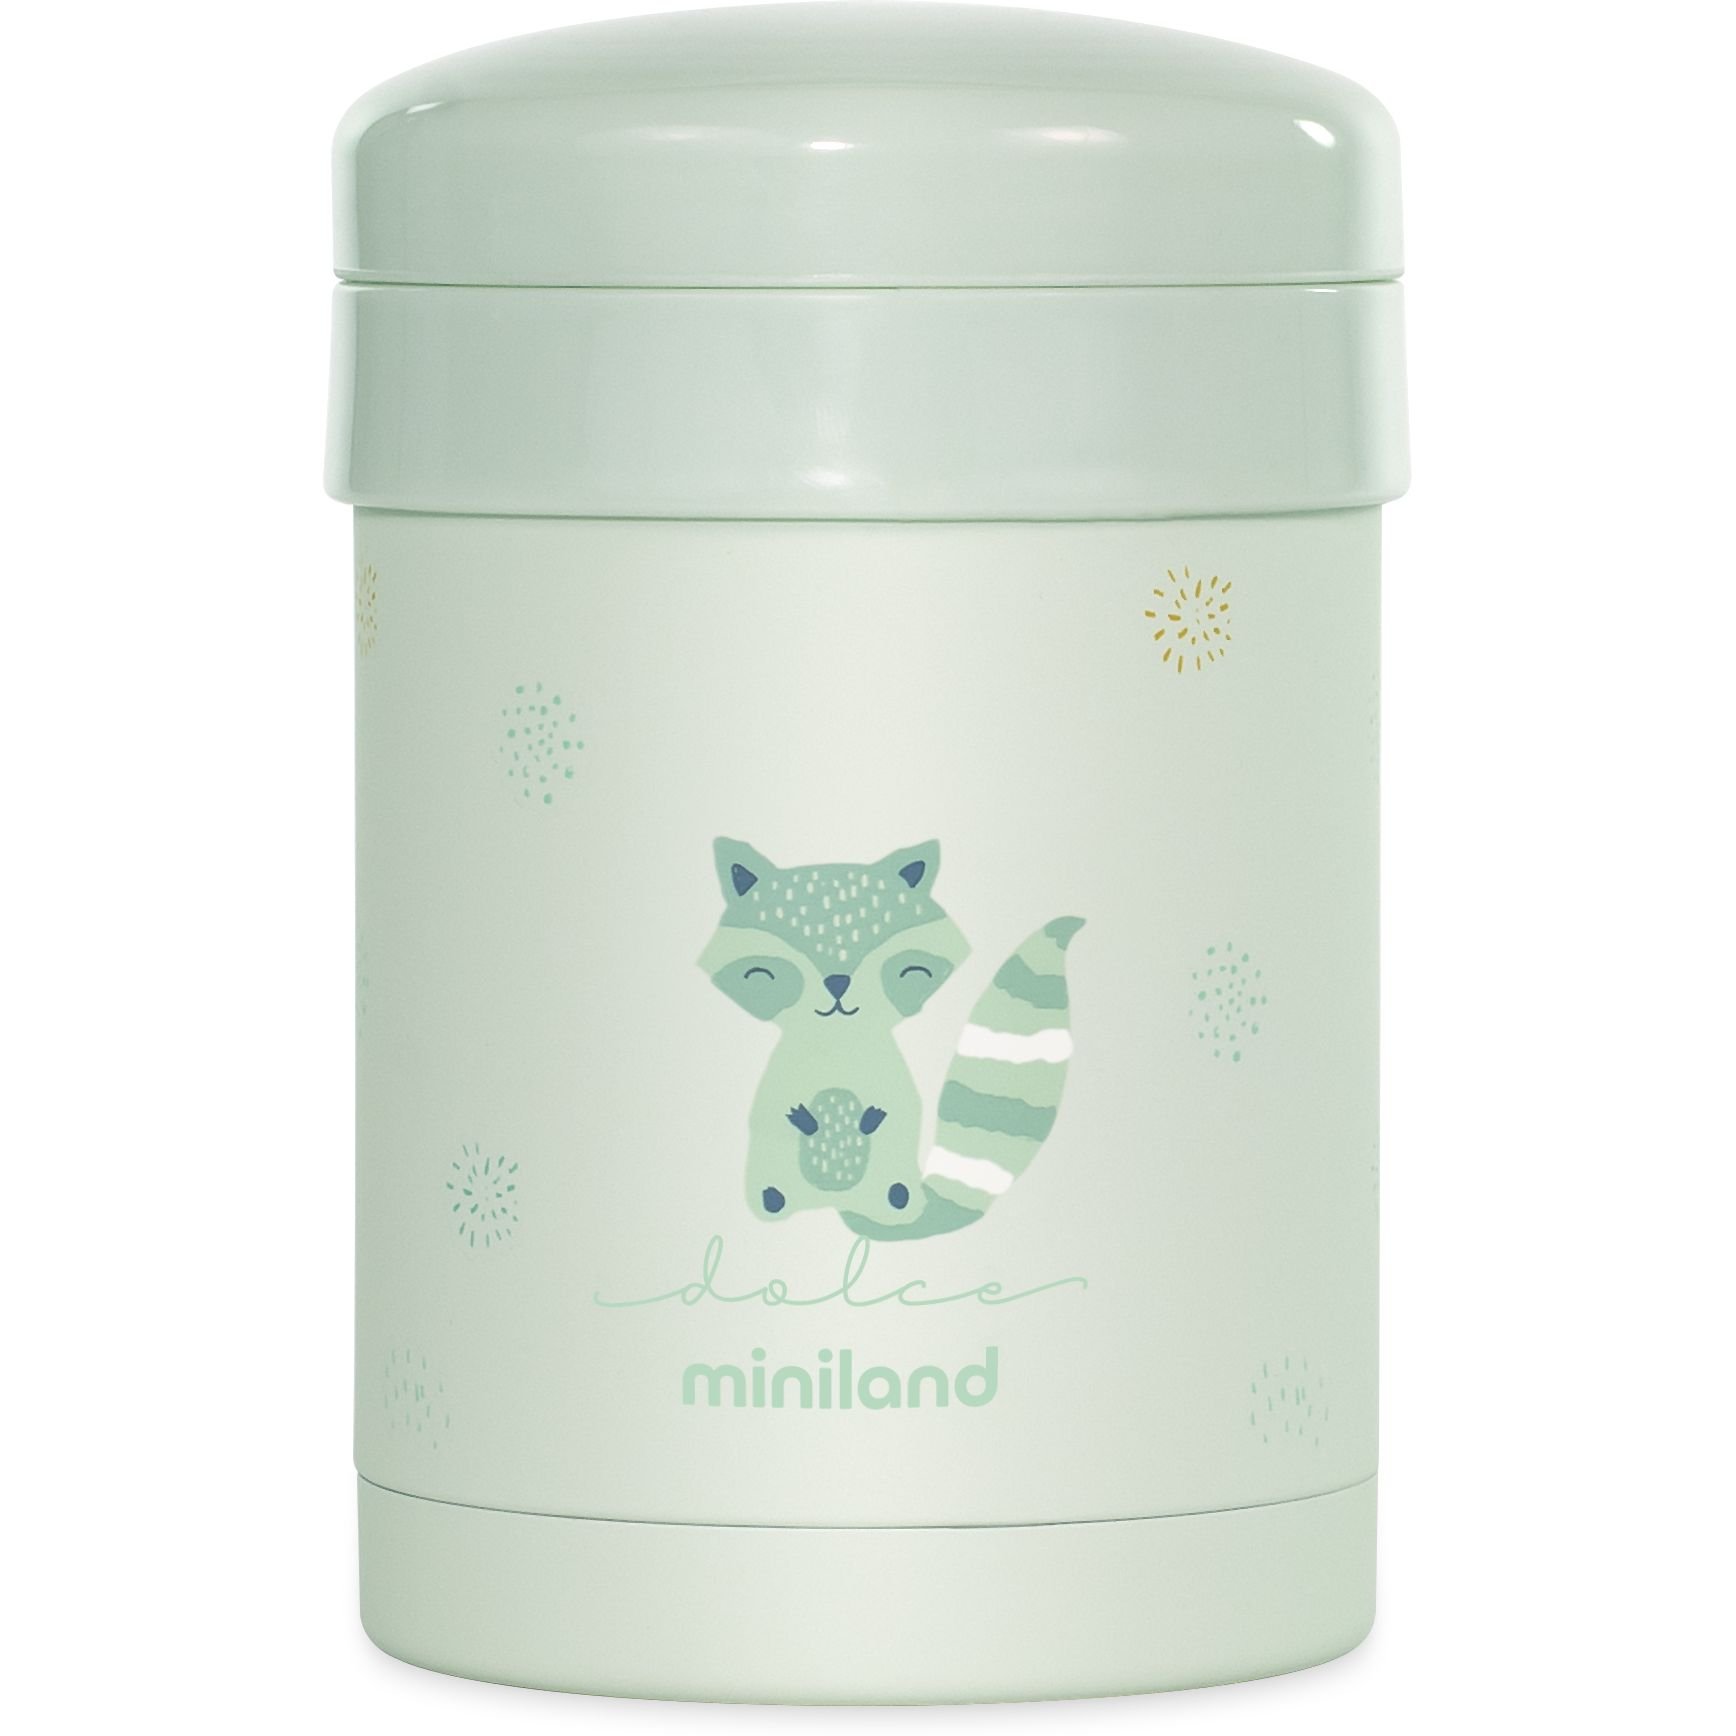 Термос харчовий Miniland Thermetic Mint з двома контейнерами 700 мл (89441) - фото 2